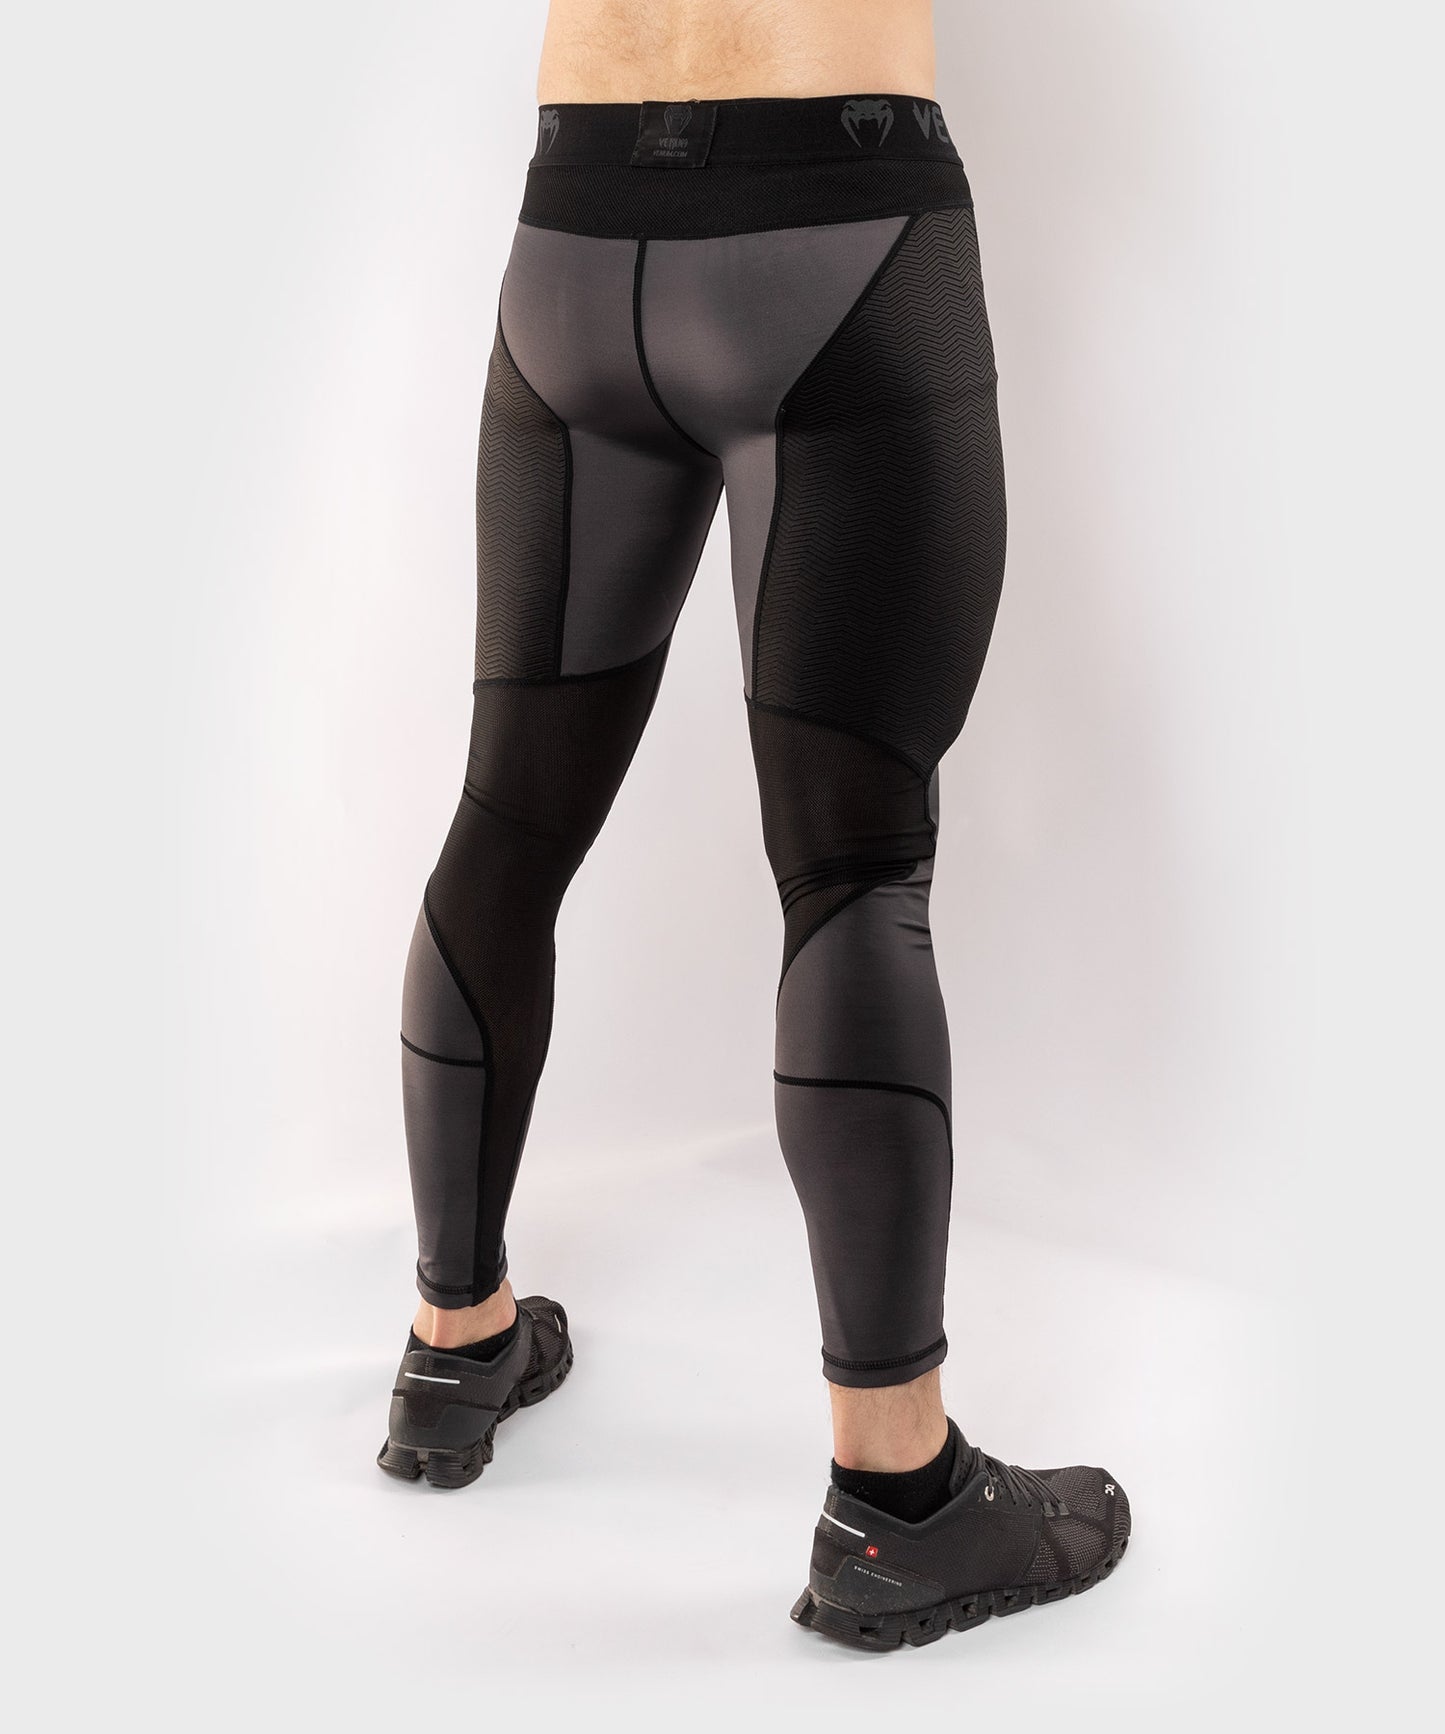 Pantalones de compresión Venum G-Fit - Gris/Negro